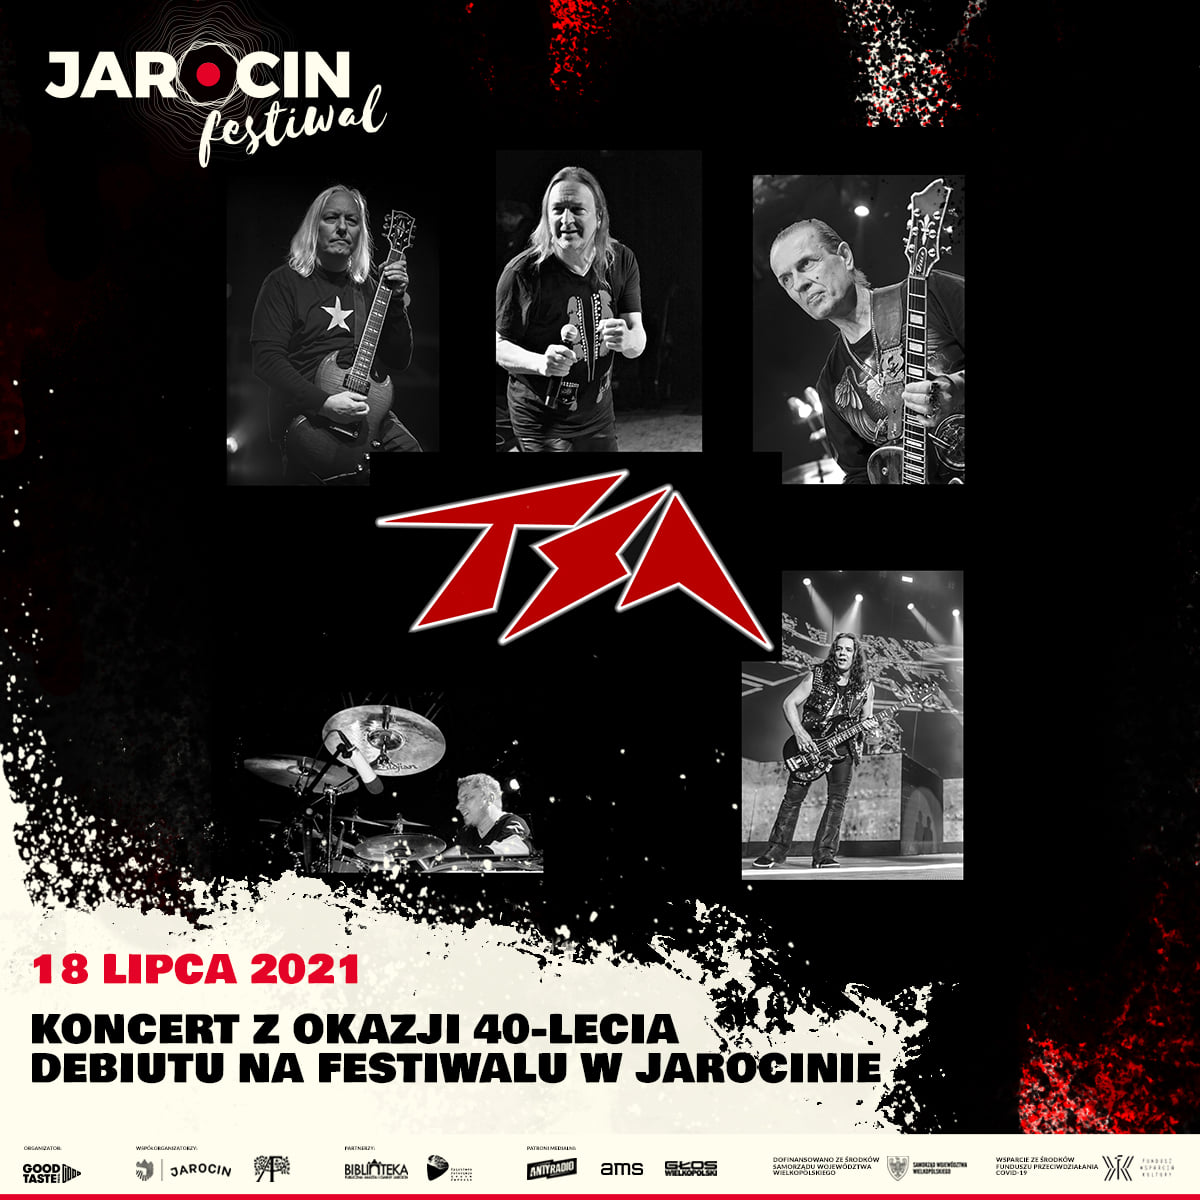 Jarocin Festiwal 2021 – do składu dołącza zespół TSA.